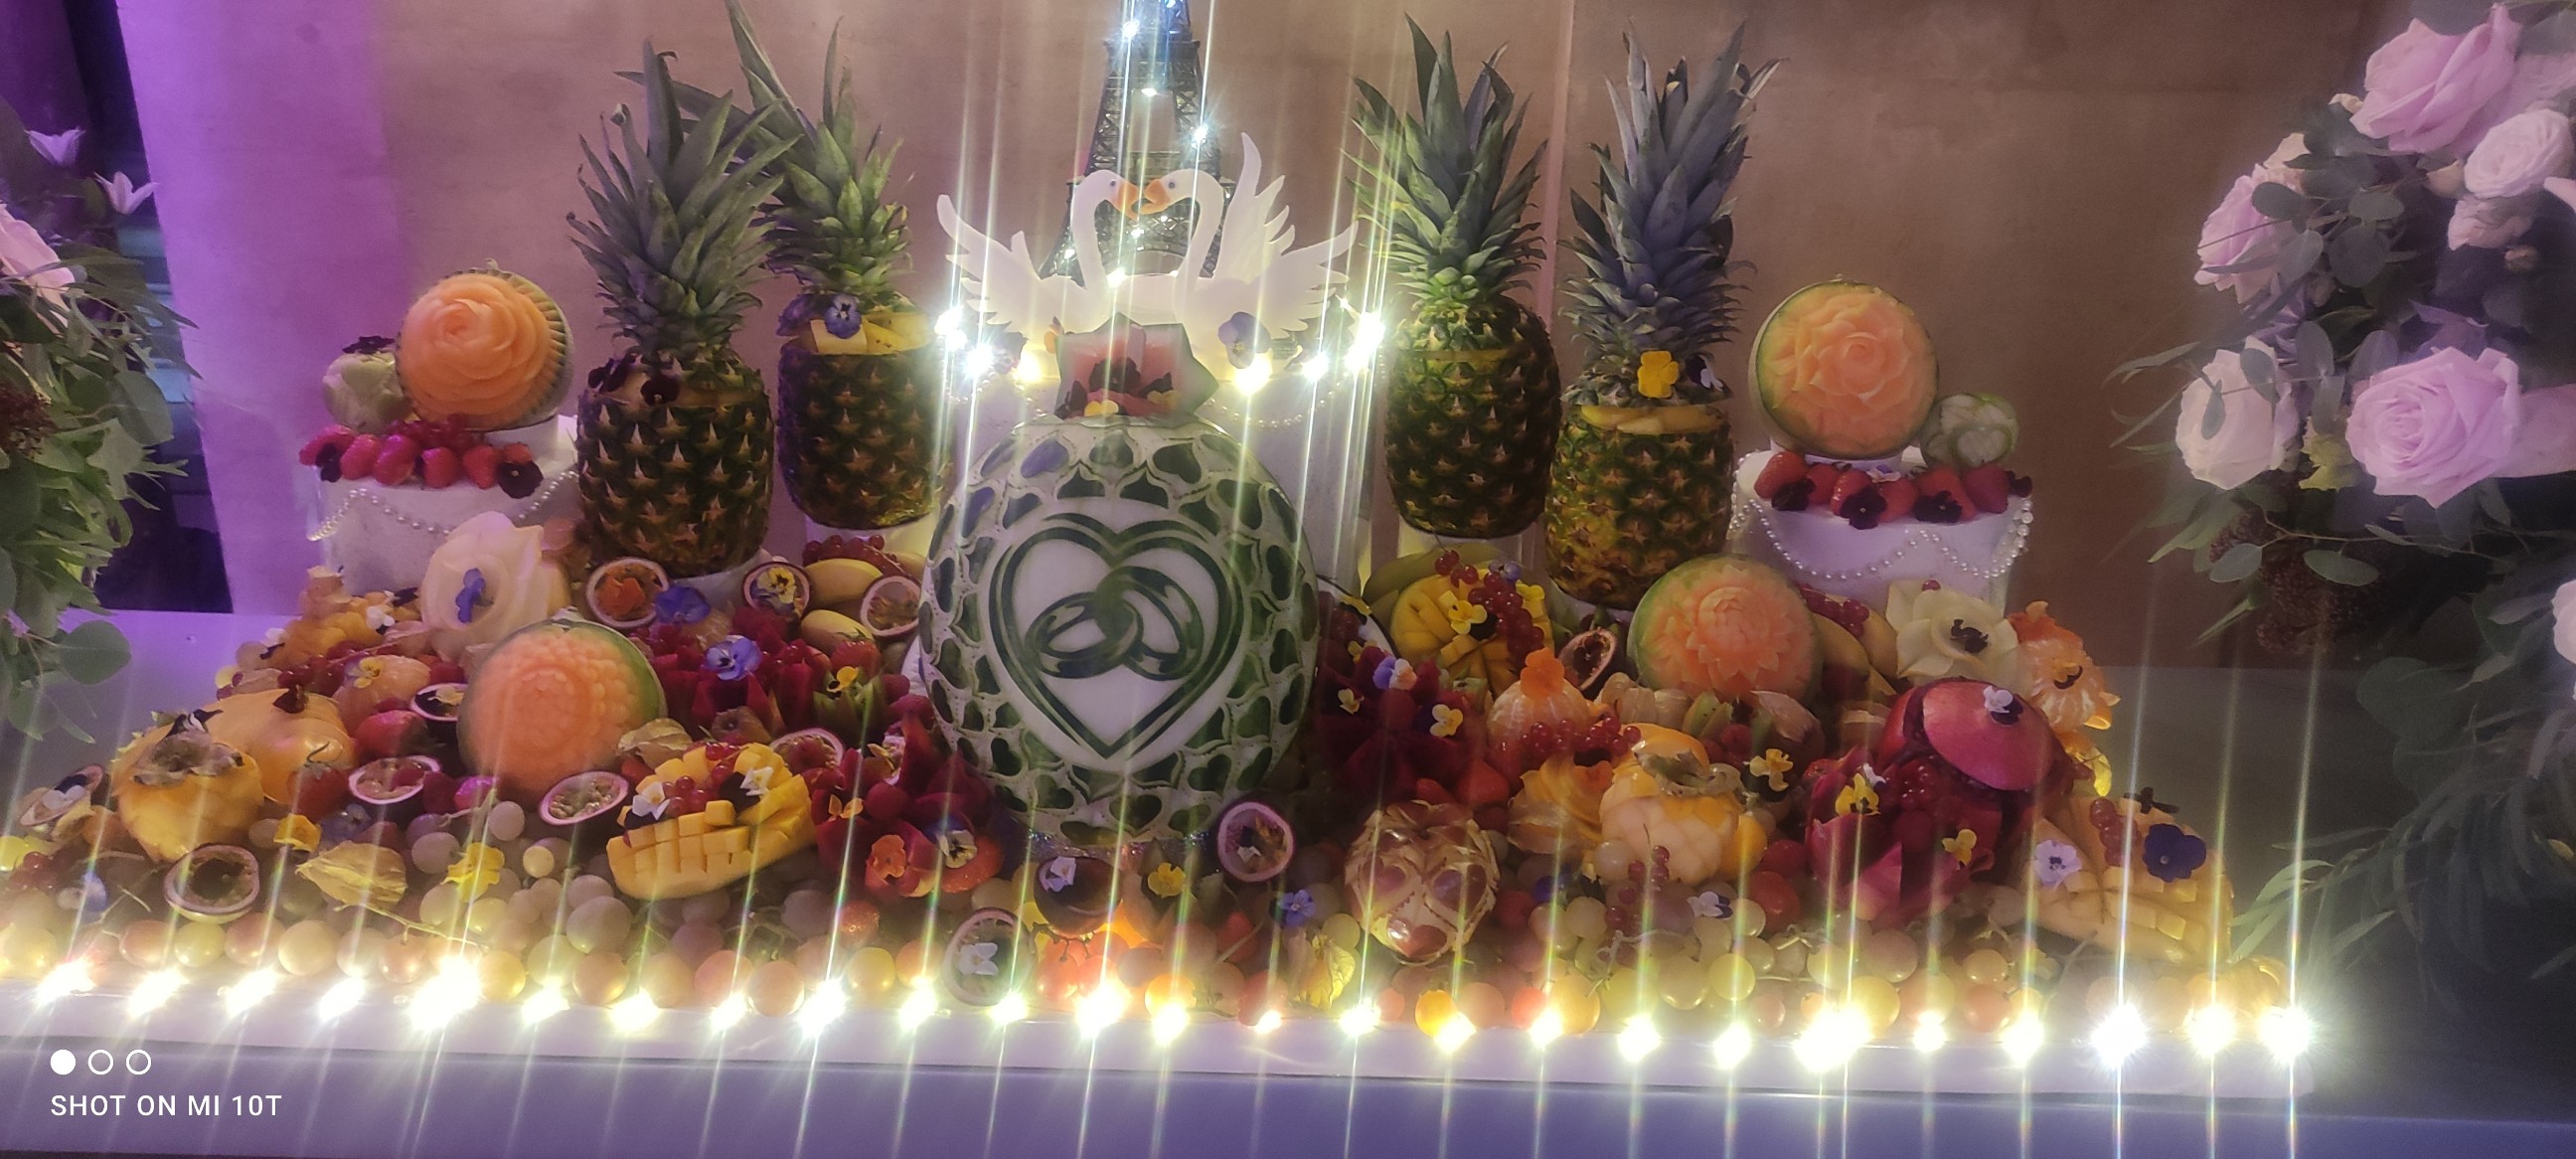 Sculpture fruits et légumes - Mariage